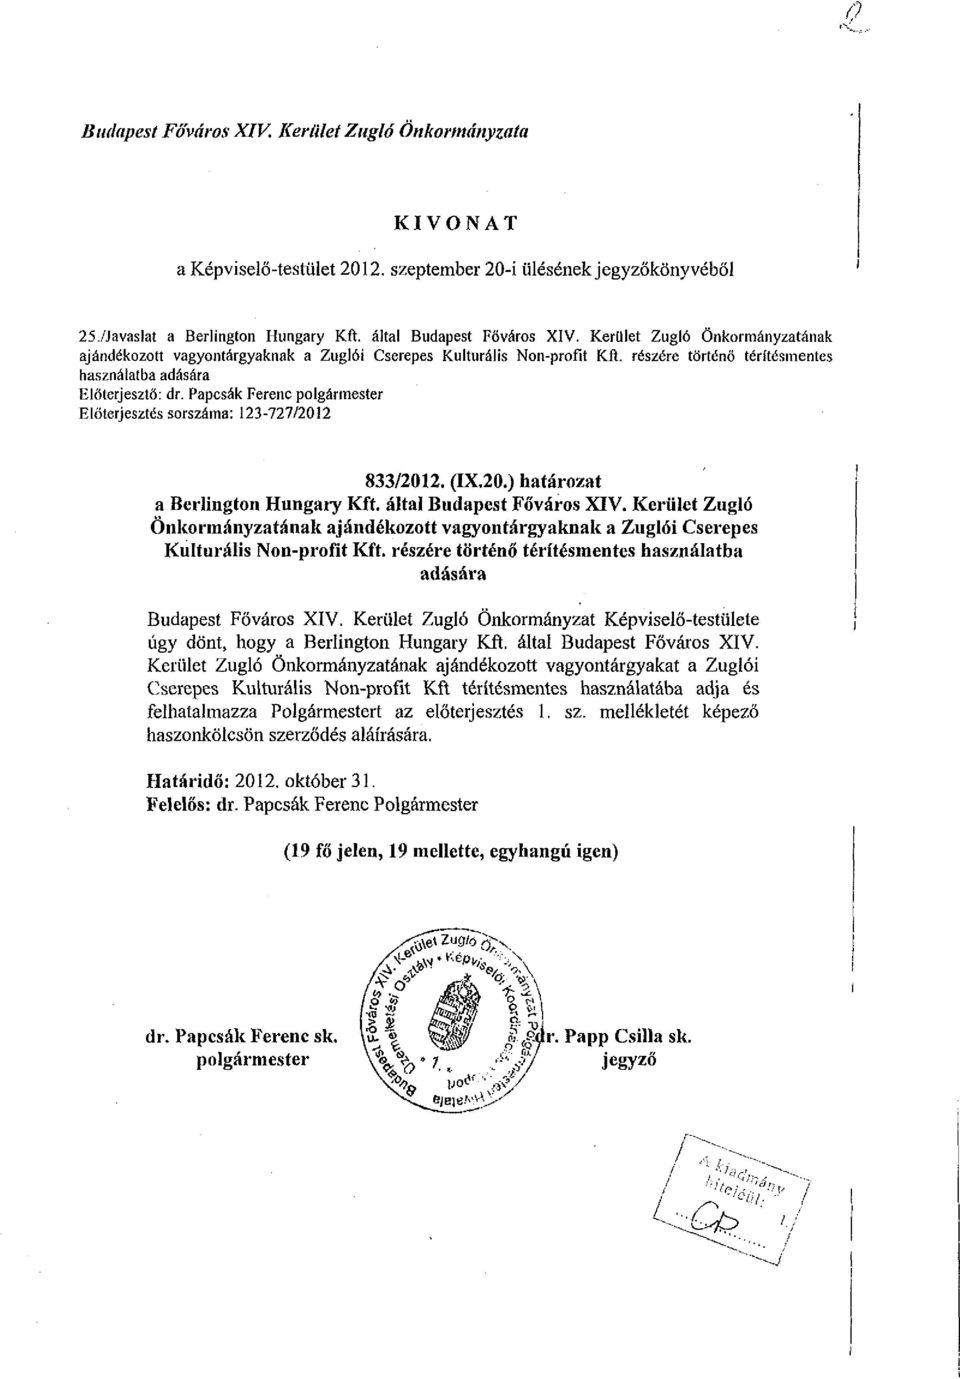 Papcsák Ferenc polgármester Előterjesztés sorszáma: 3-77/0 833/0. (IX.0.) határozat a Berlington Hungary Kft. által Budapest Főváros XIV.